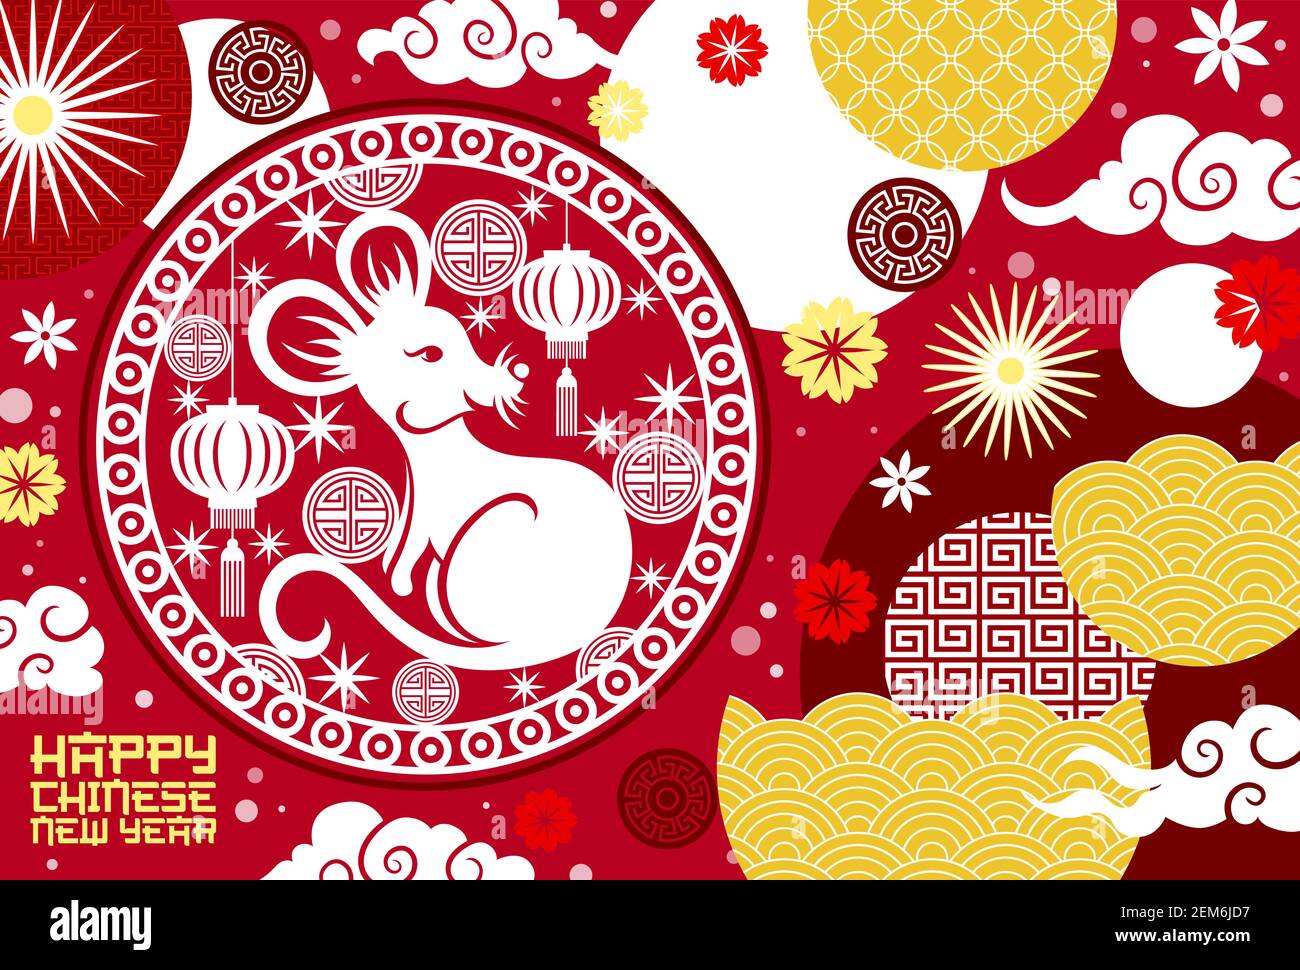 Tirelire Chinoise Avec Illustration De Lanternes. Vecteur De Caractère